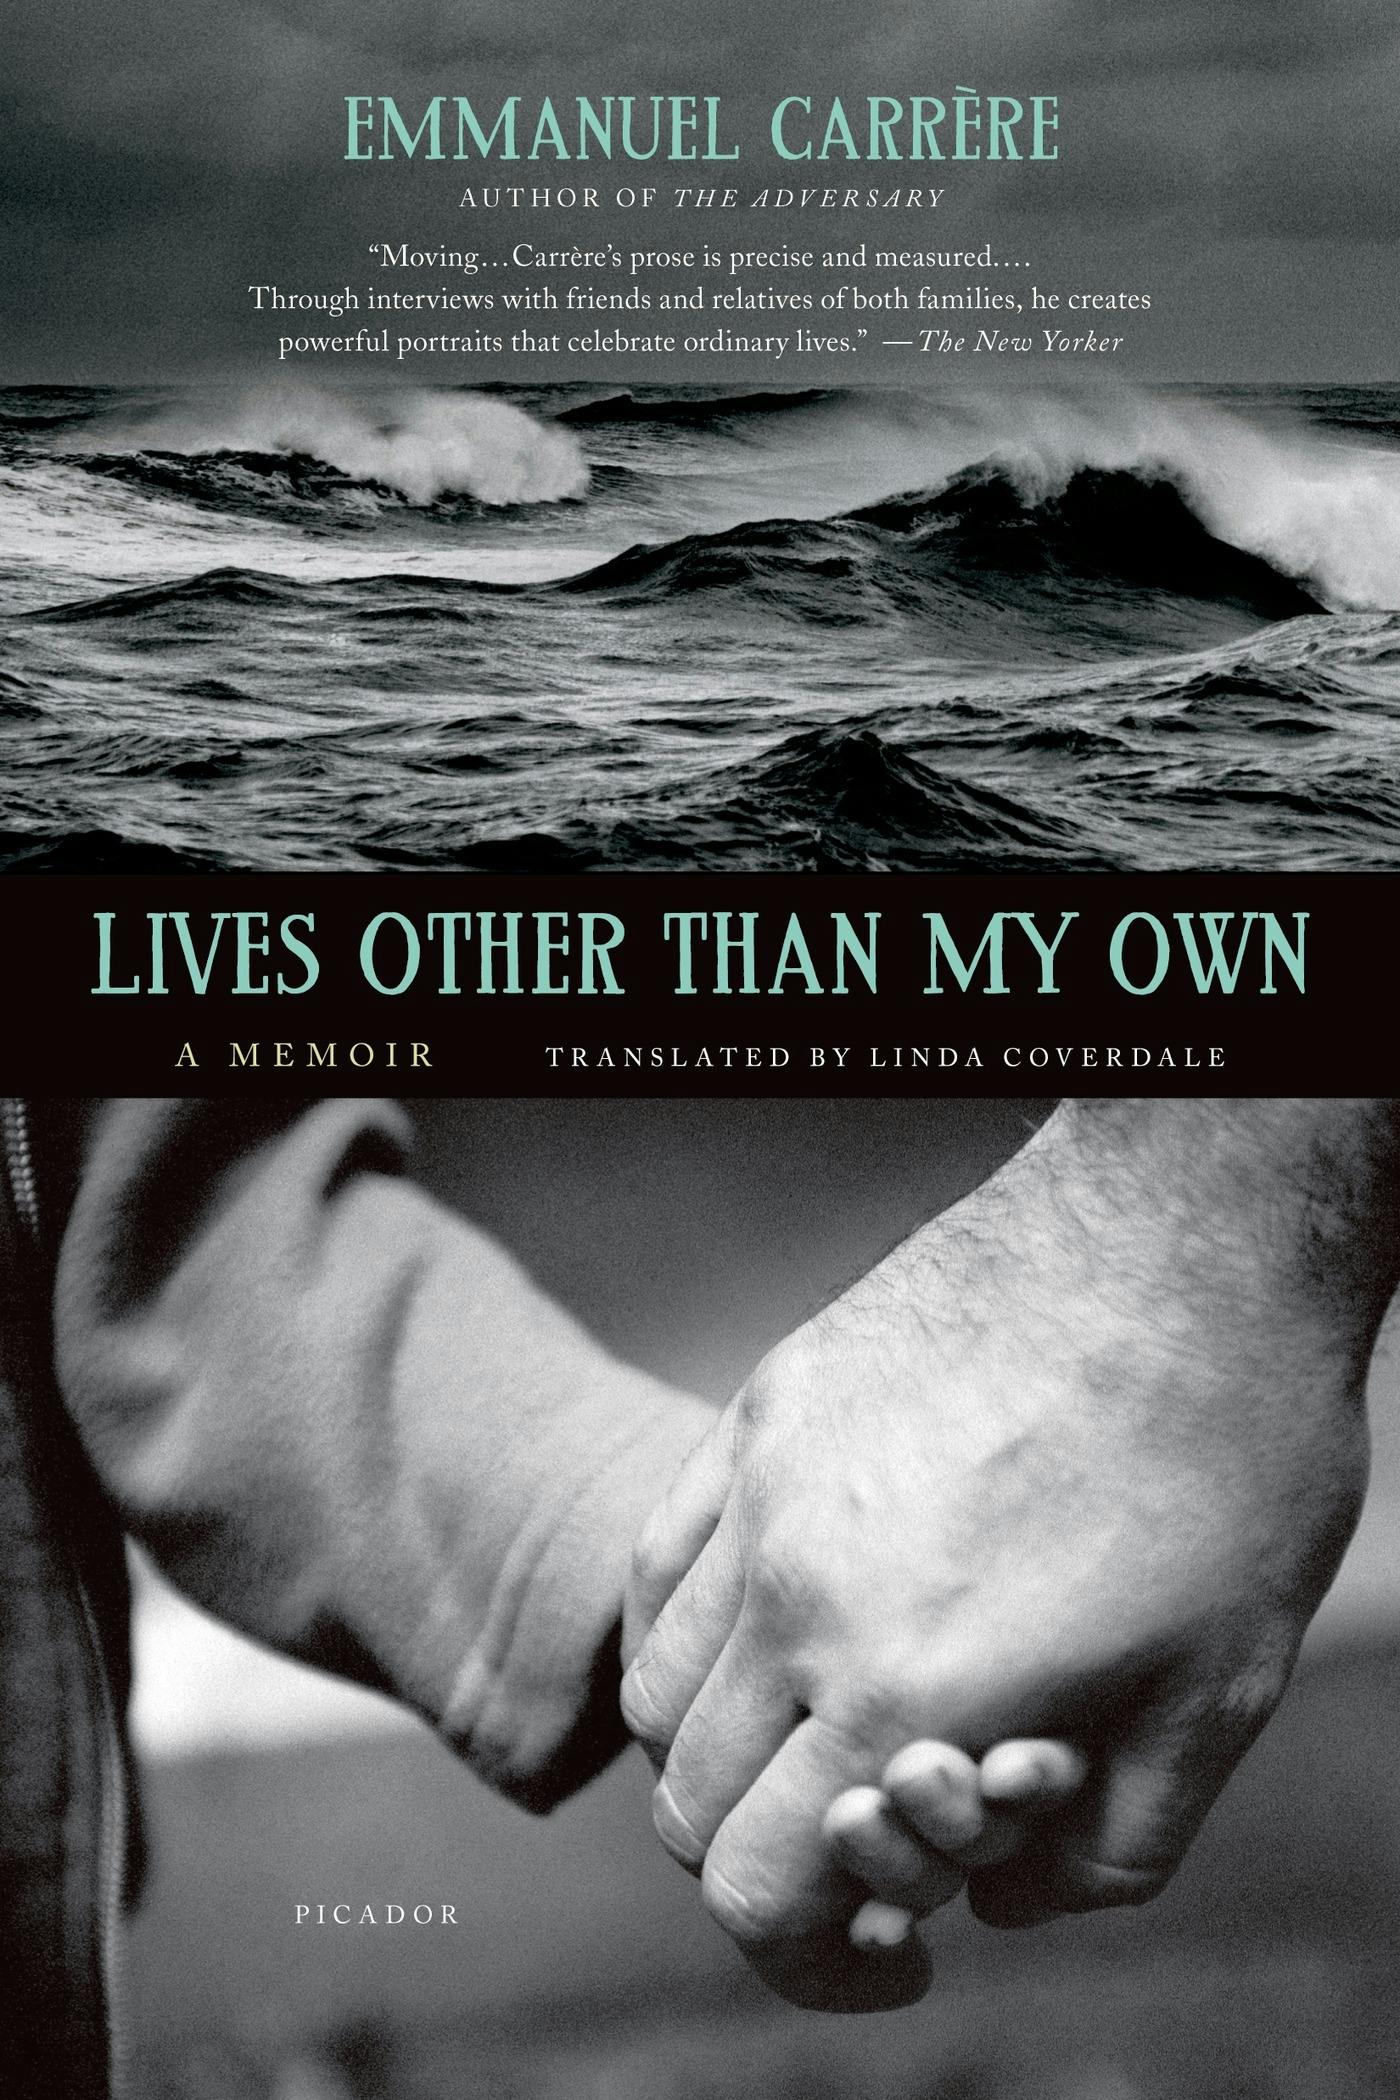 My other life. Эммануэль книга. My ordinary Life обложка. Третья жизнь обложка. Книга жизни.